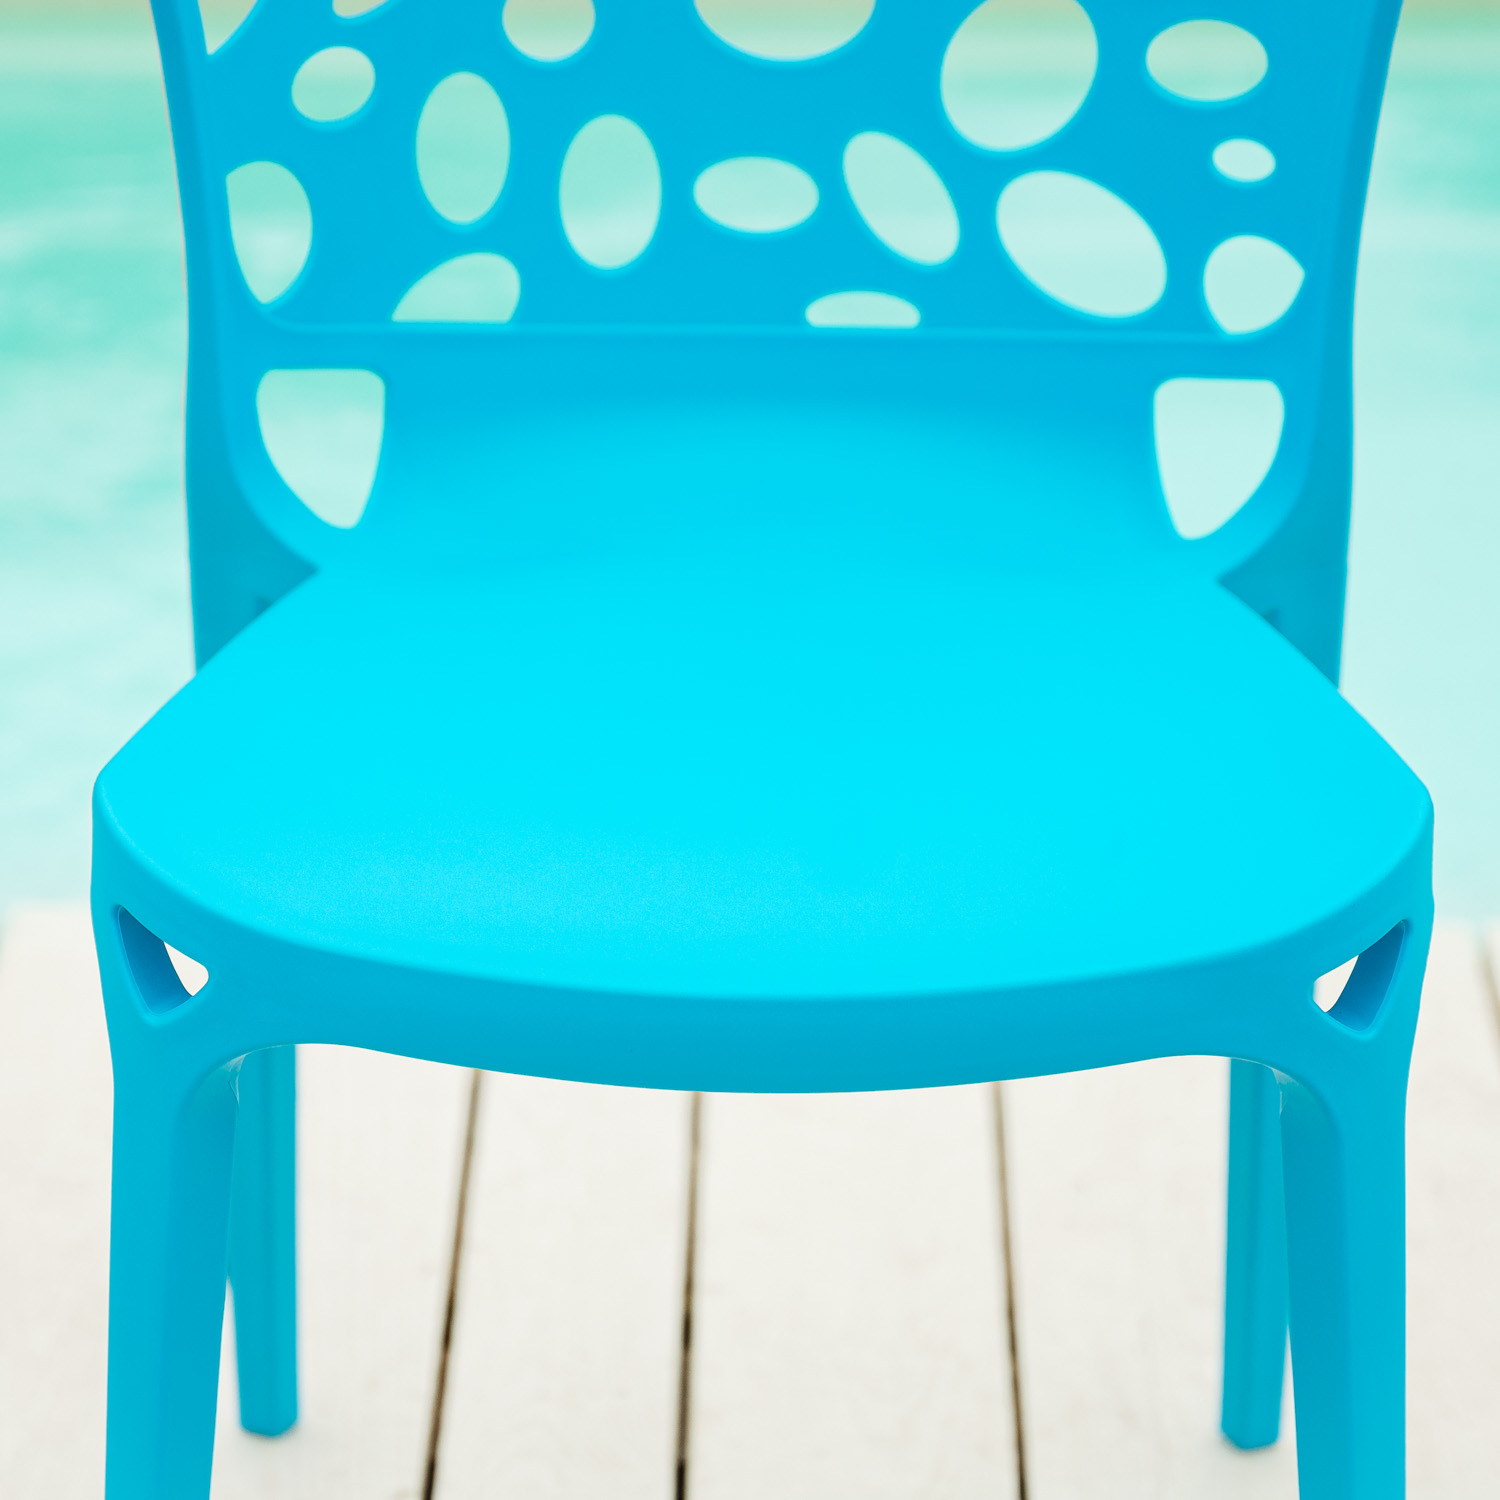 Gartenstuhl 4er Set Modern Blau Stühle Küchenstühle Kunststoff Stapelstühle Balkonstuhl Outdoor-Stuhl